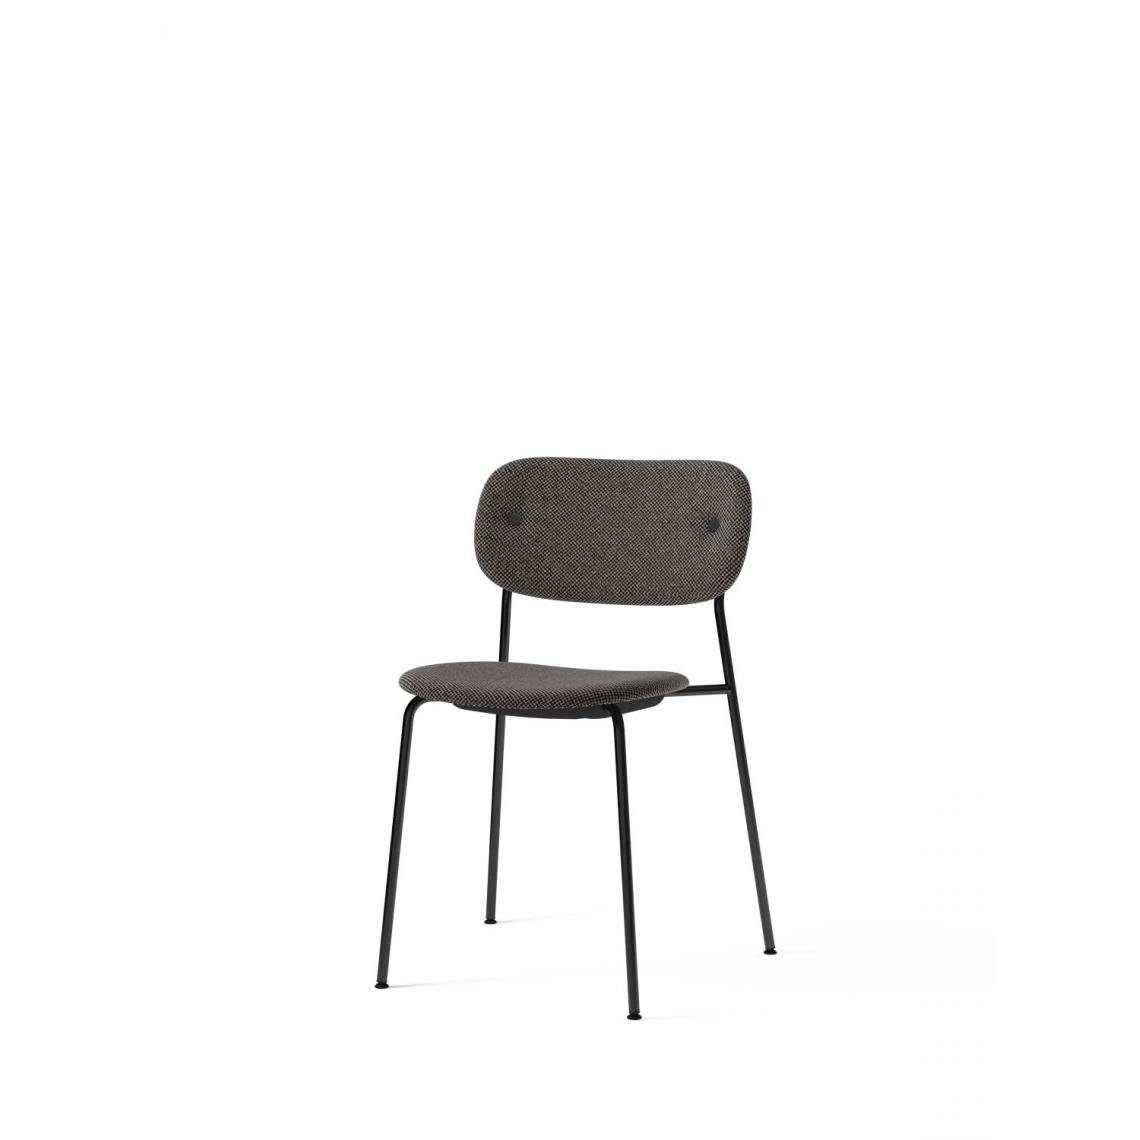 Menu - Co Dining Chair - MenuCoChairDoppiopanama001 - noir - Chaises